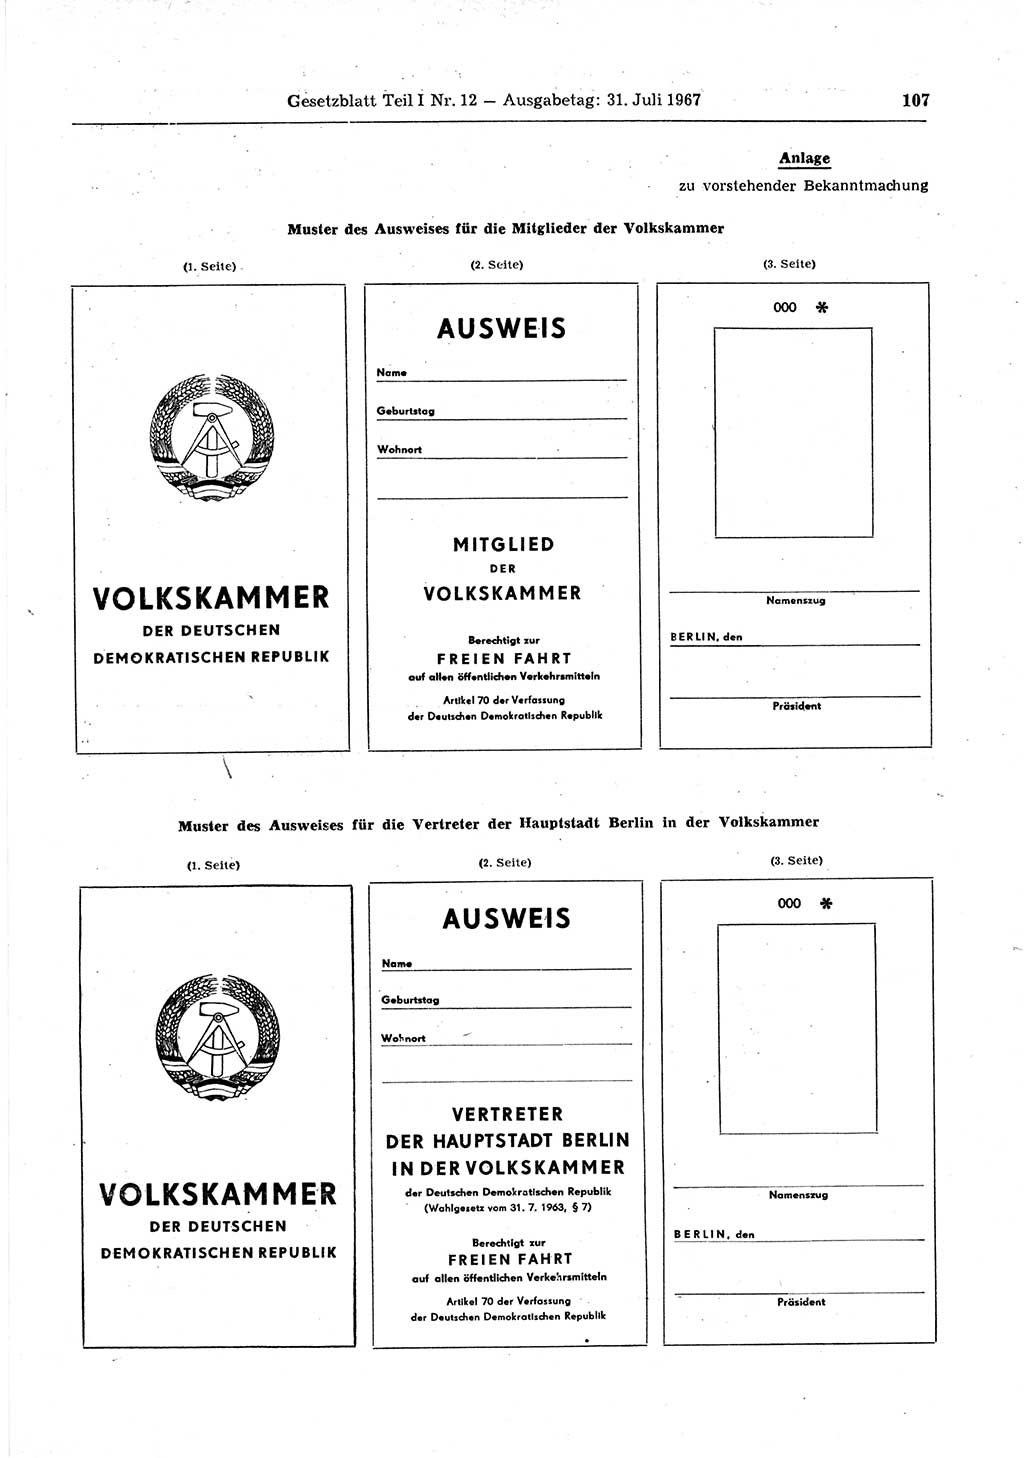 Gesetzblatt (GBl.) der Deutschen Demokratischen Republik (DDR) Teil Ⅰ 1967, Seite 107 (GBl. DDR Ⅰ 1967, S. 107)